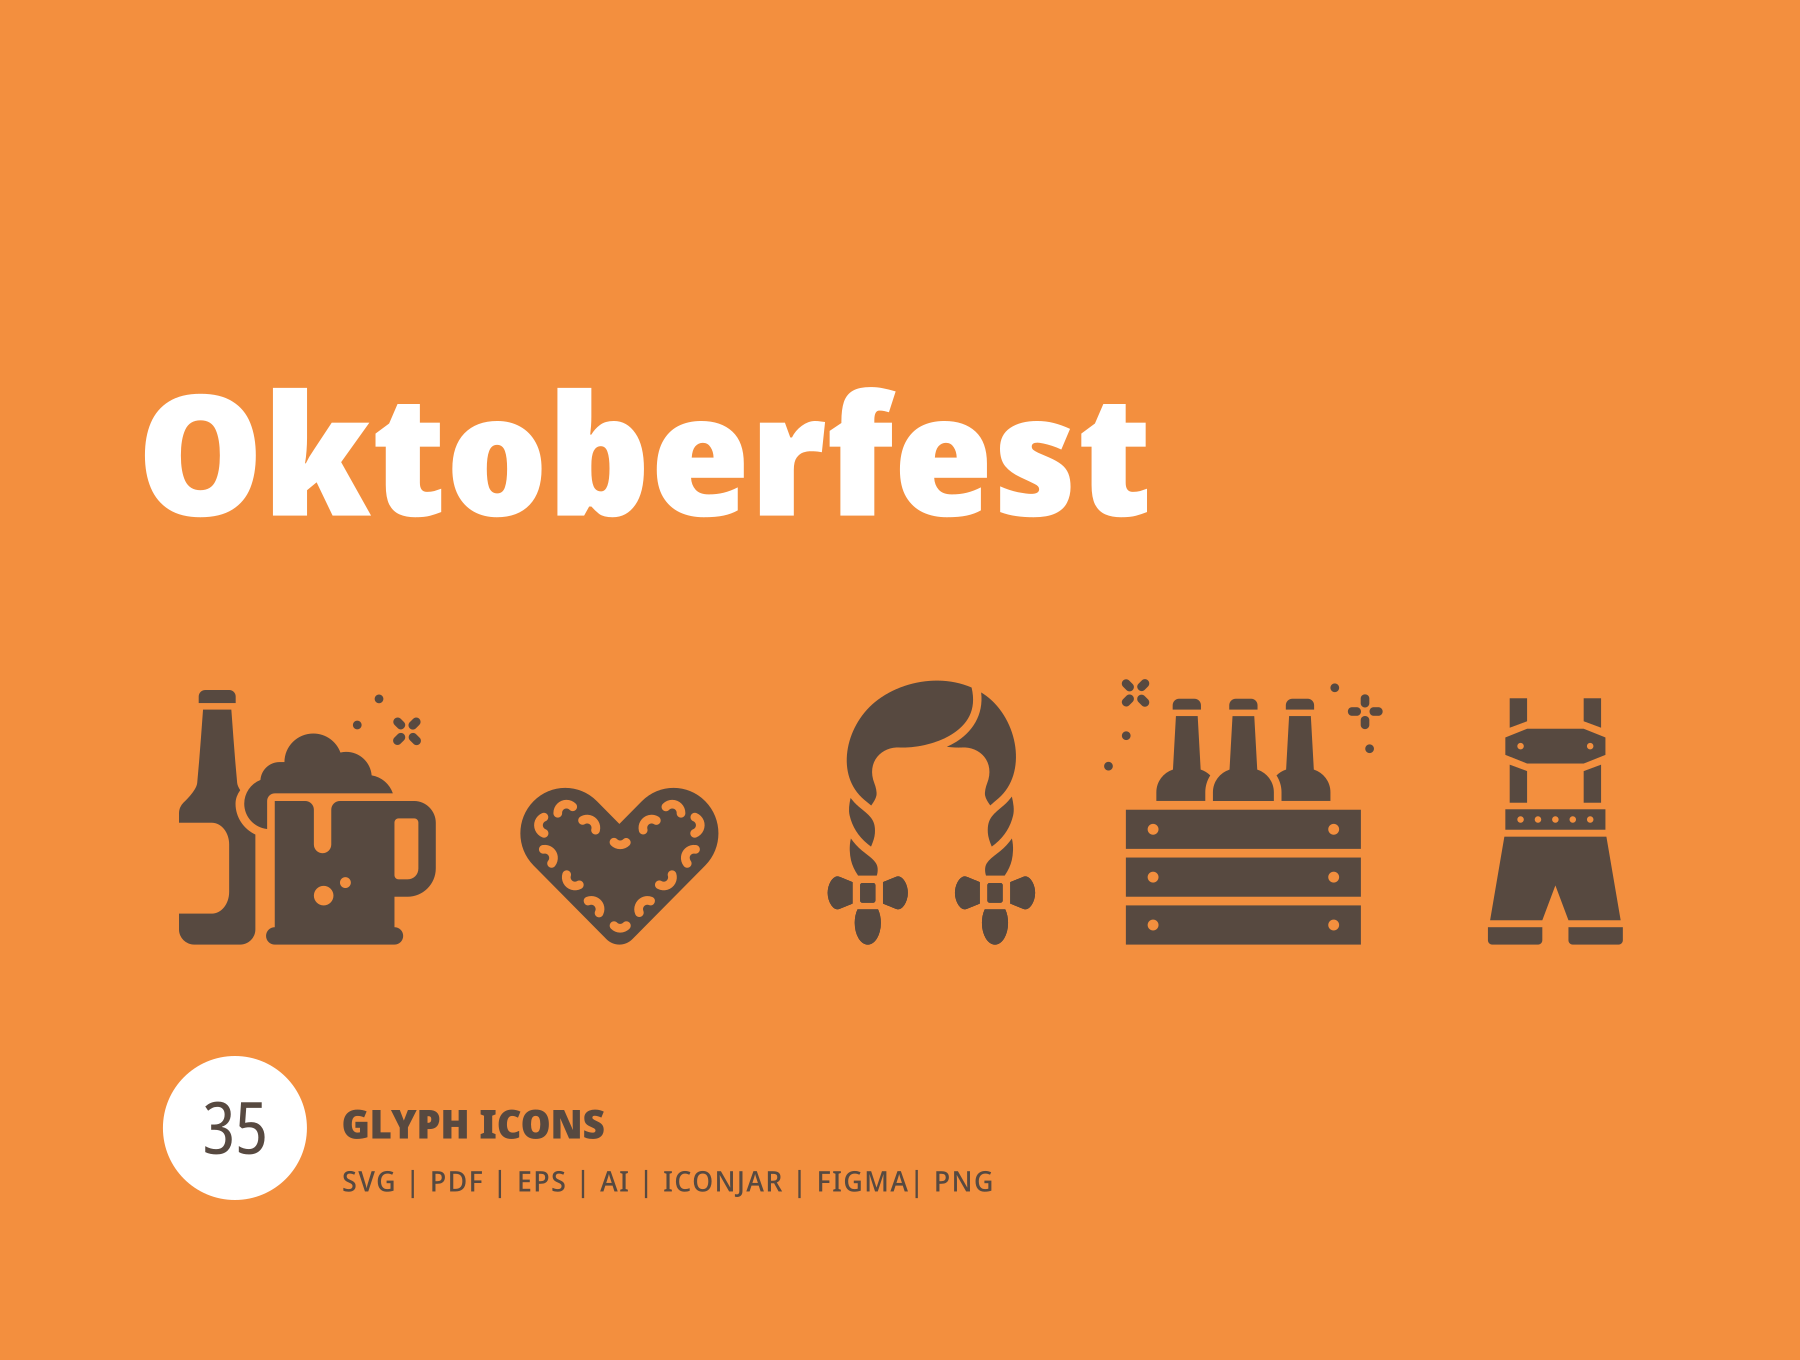 啤酒节标志符号Oktoberfest Glyph Icons